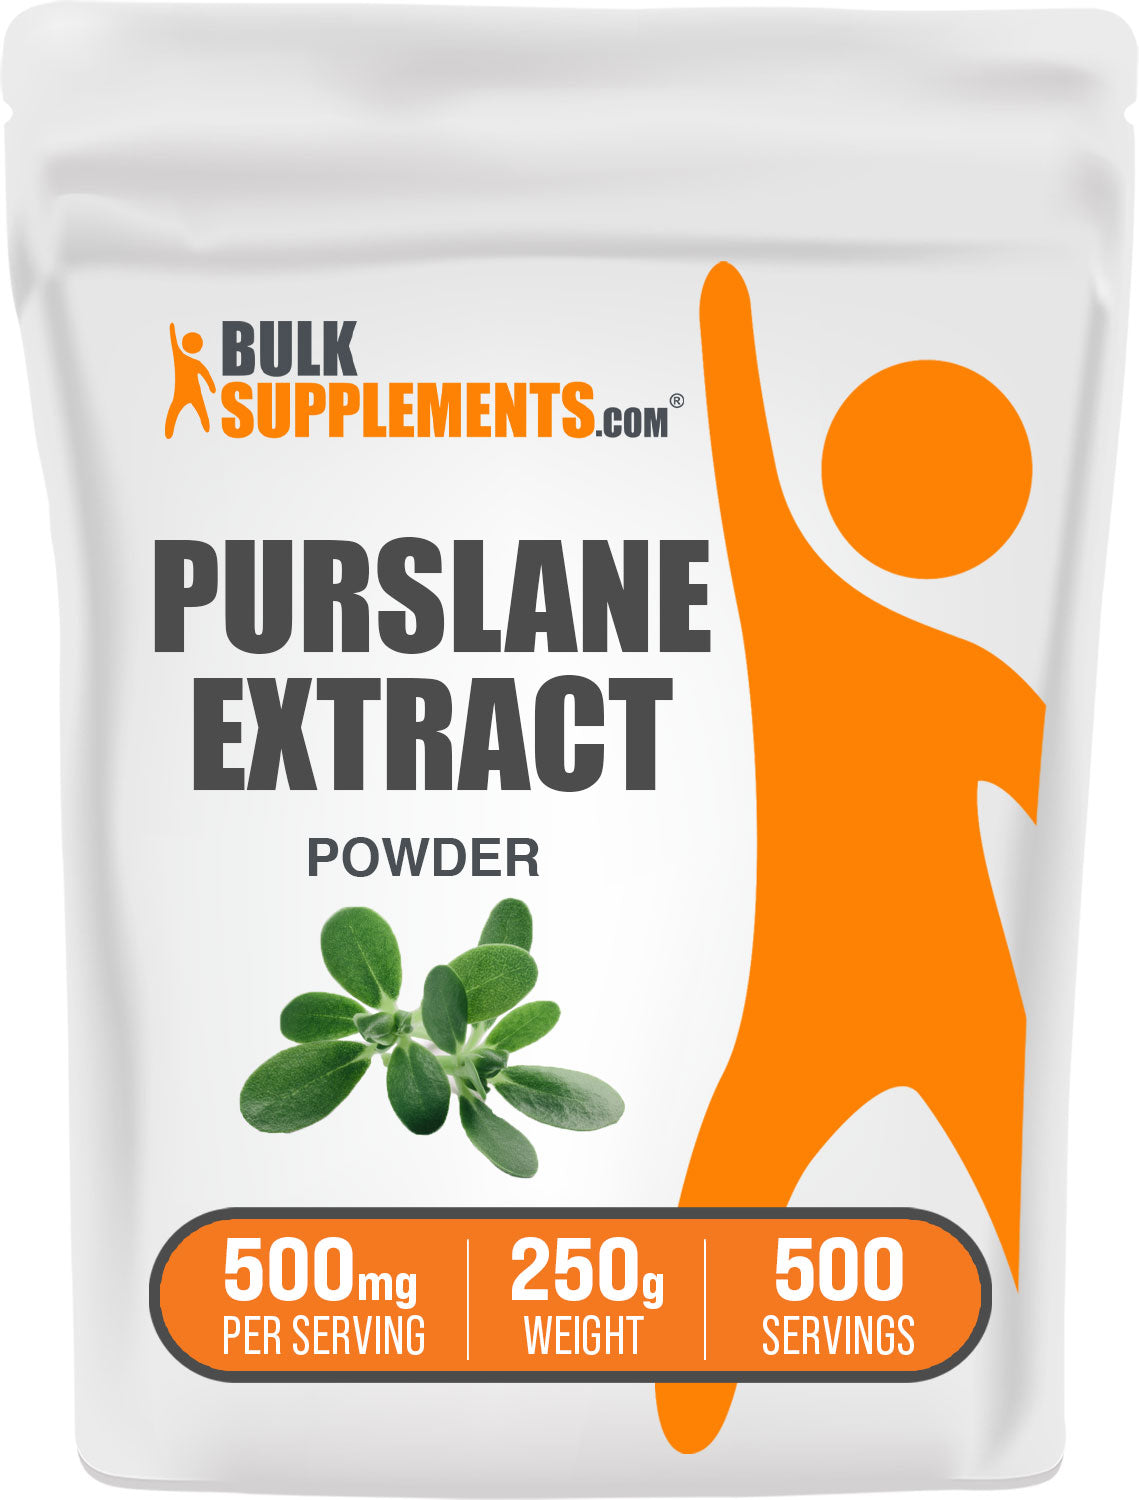 Purslane Extract 250g Bag